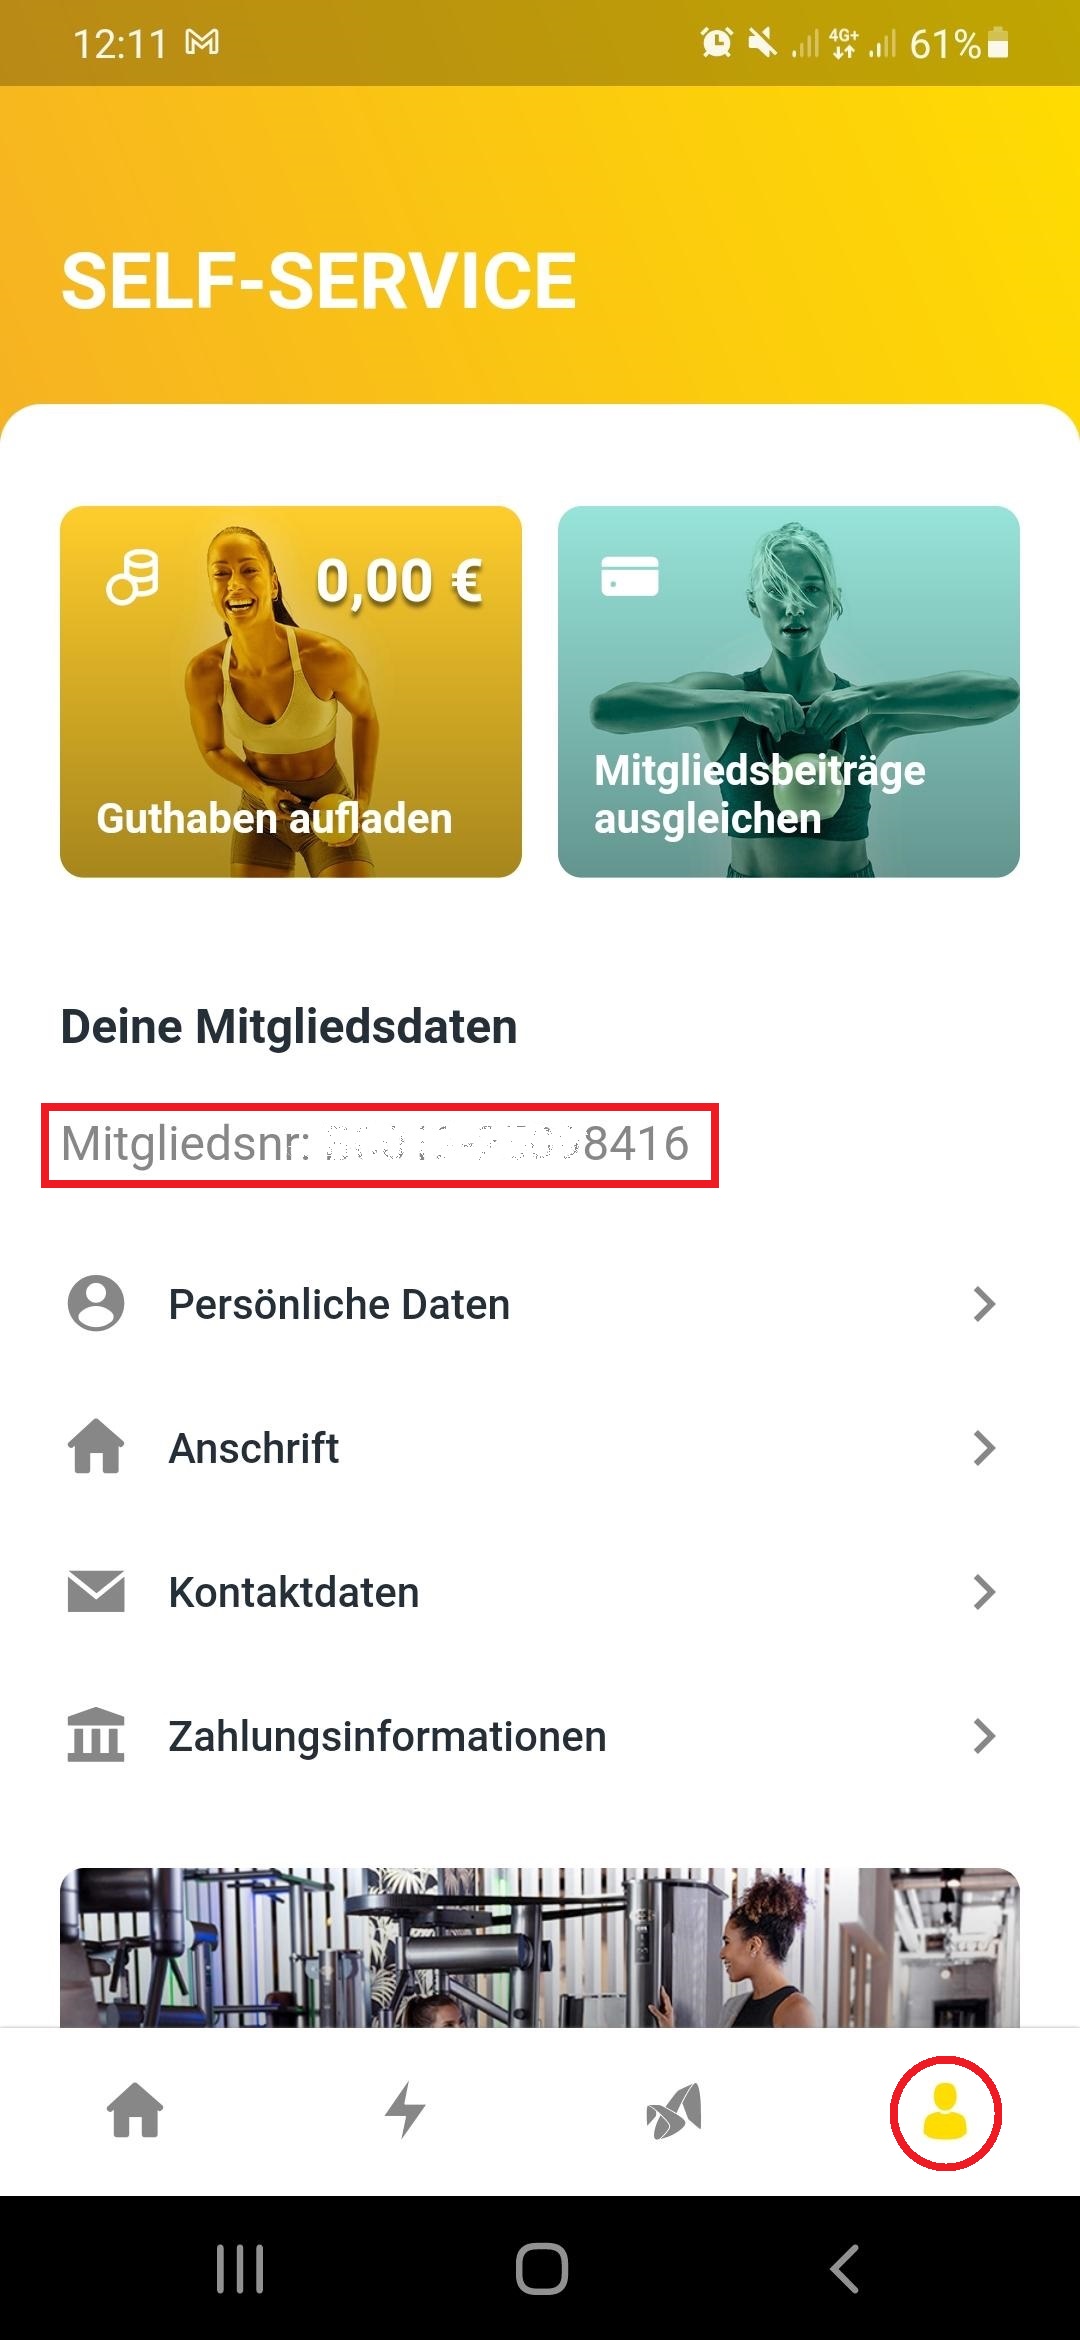 MG_Nummer_in_der_App.jpg